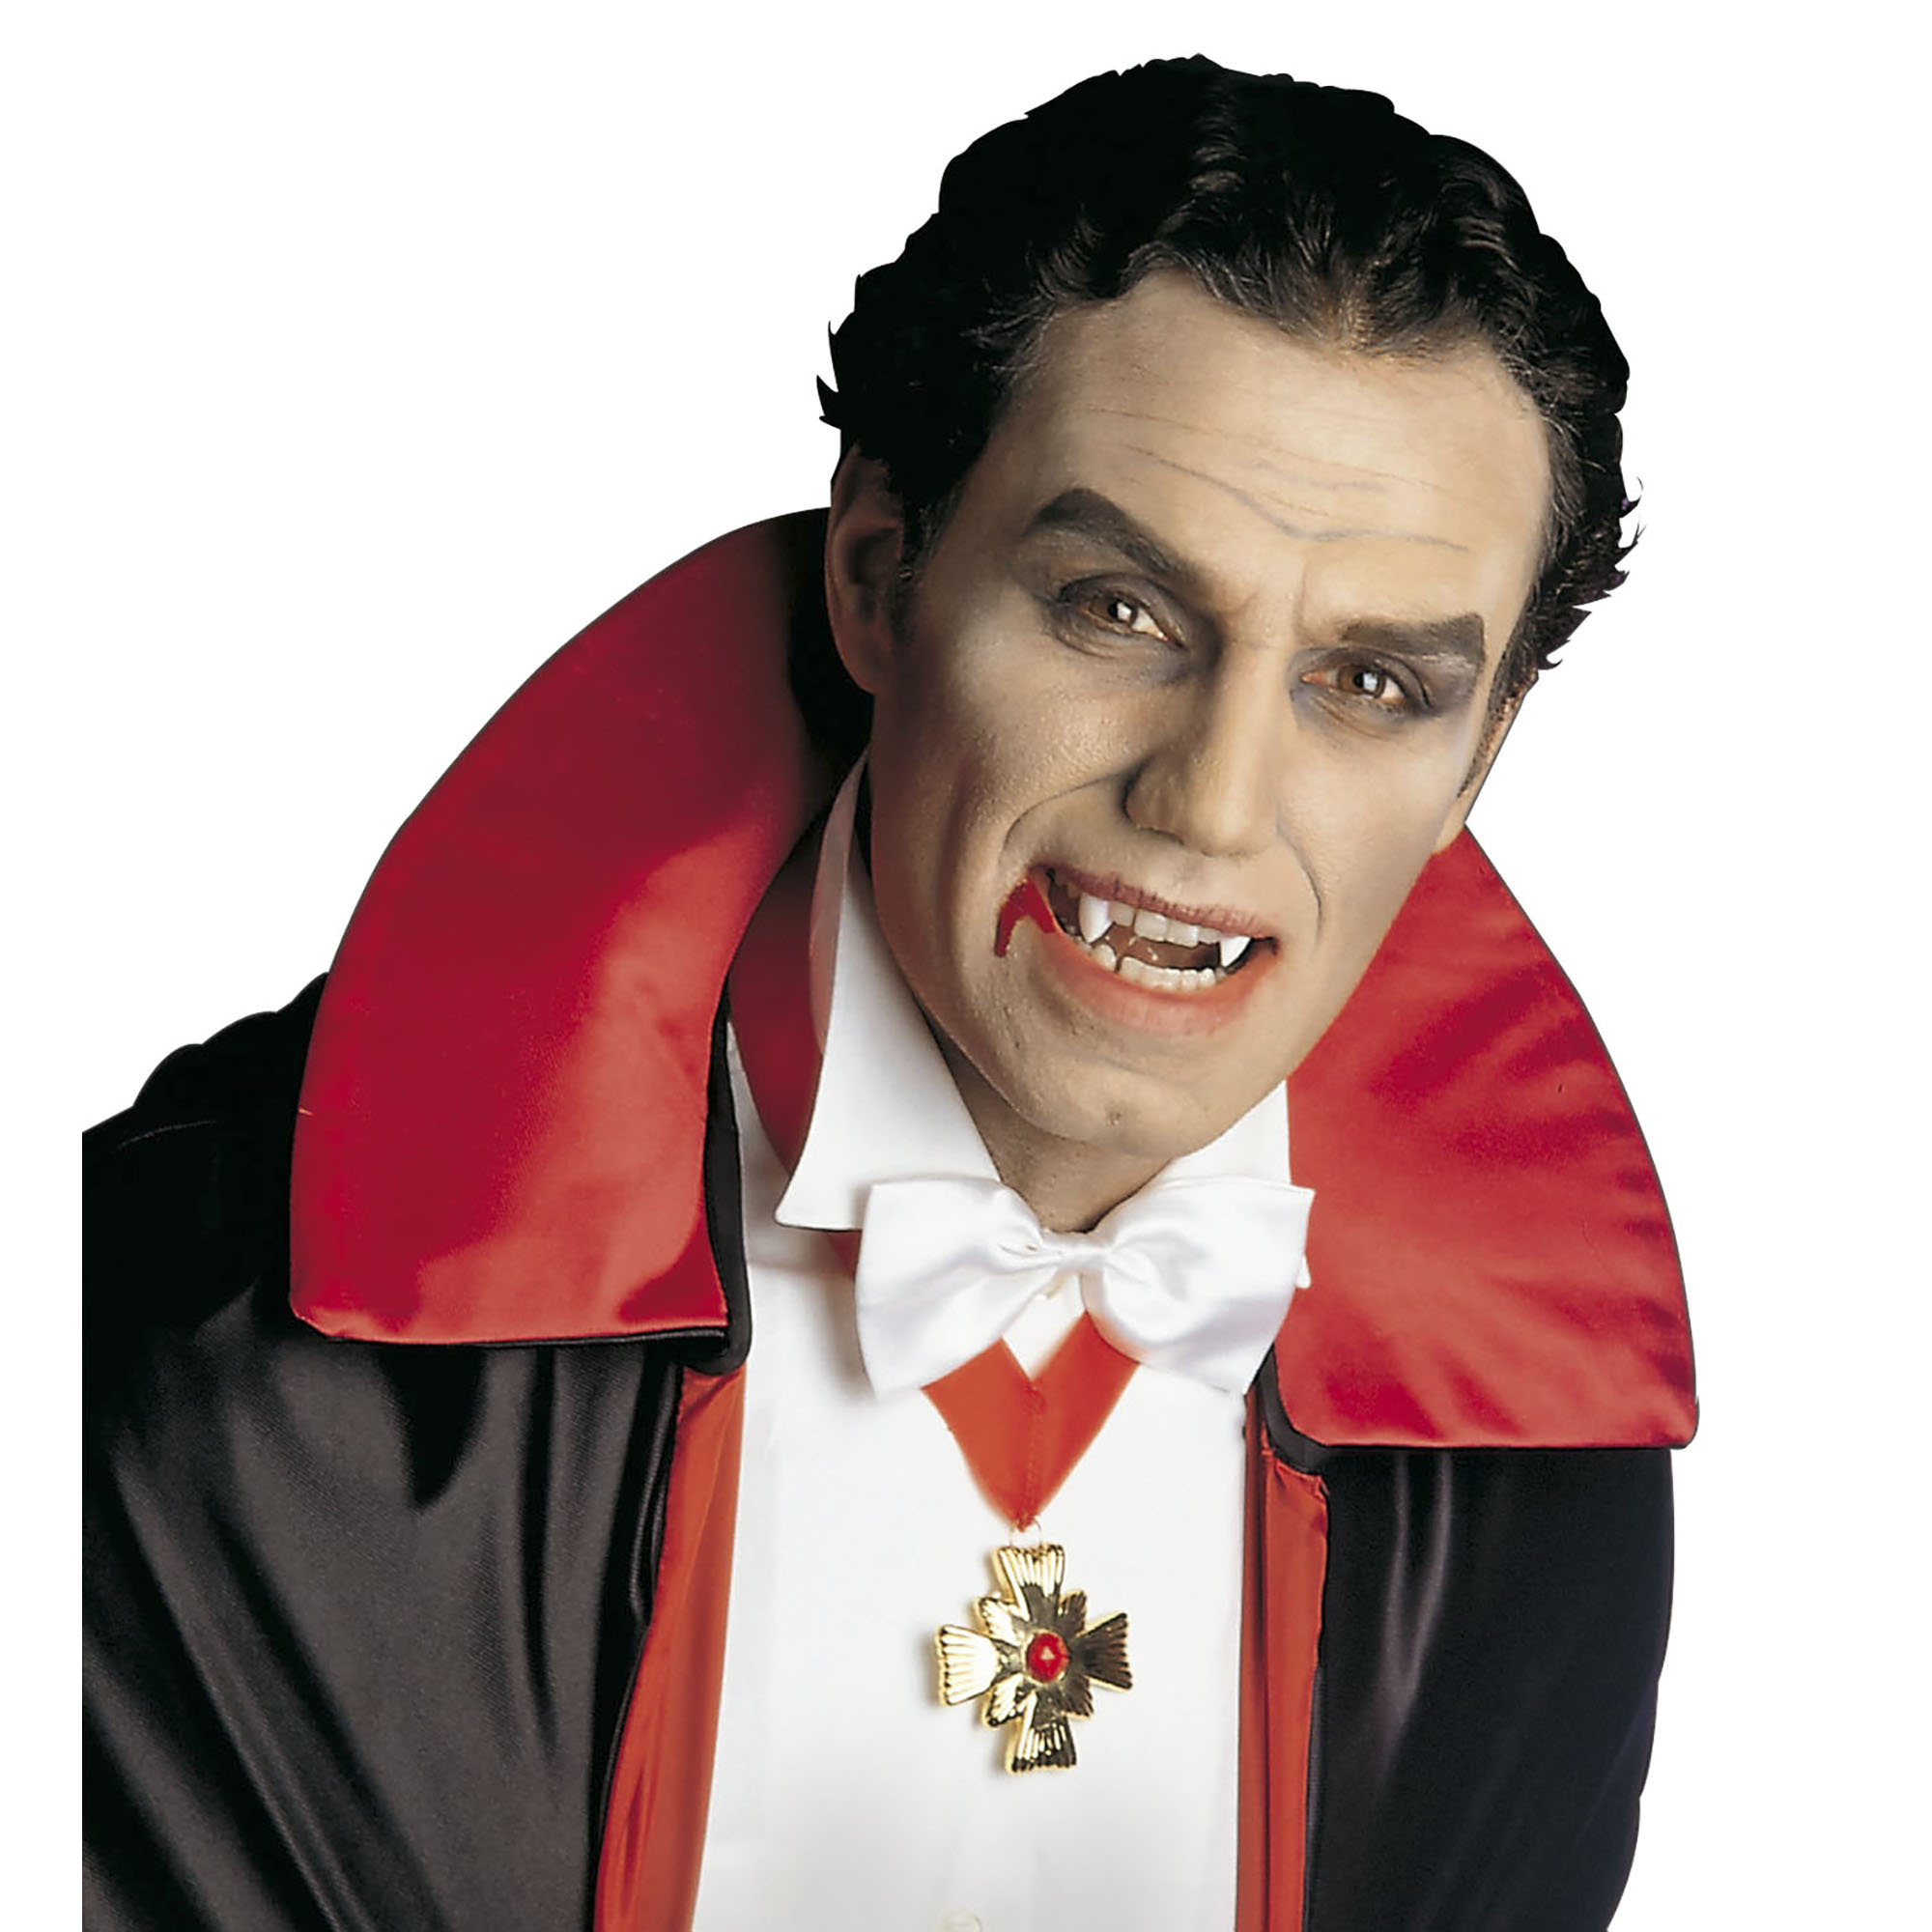 Carnavalsaccessoires: Vampier voor Halloween